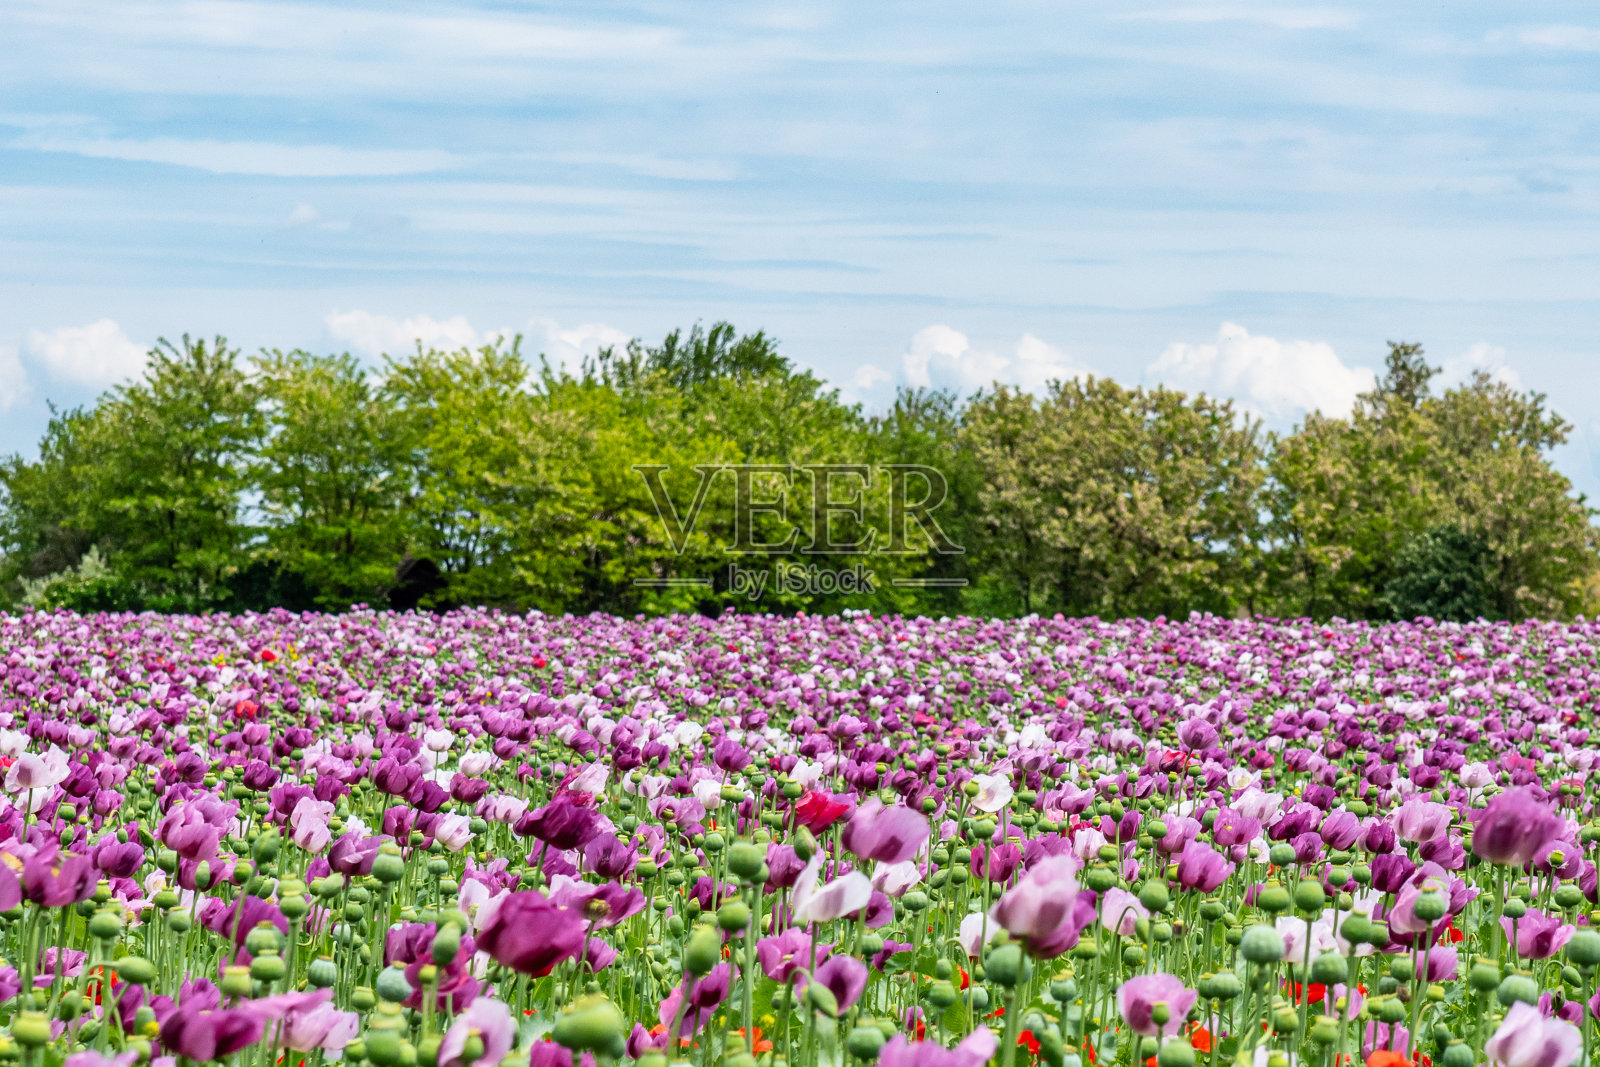 夏天的田野上开着鲜红和紫罗兰色的罂粟花。罂粟田照片摄影图片